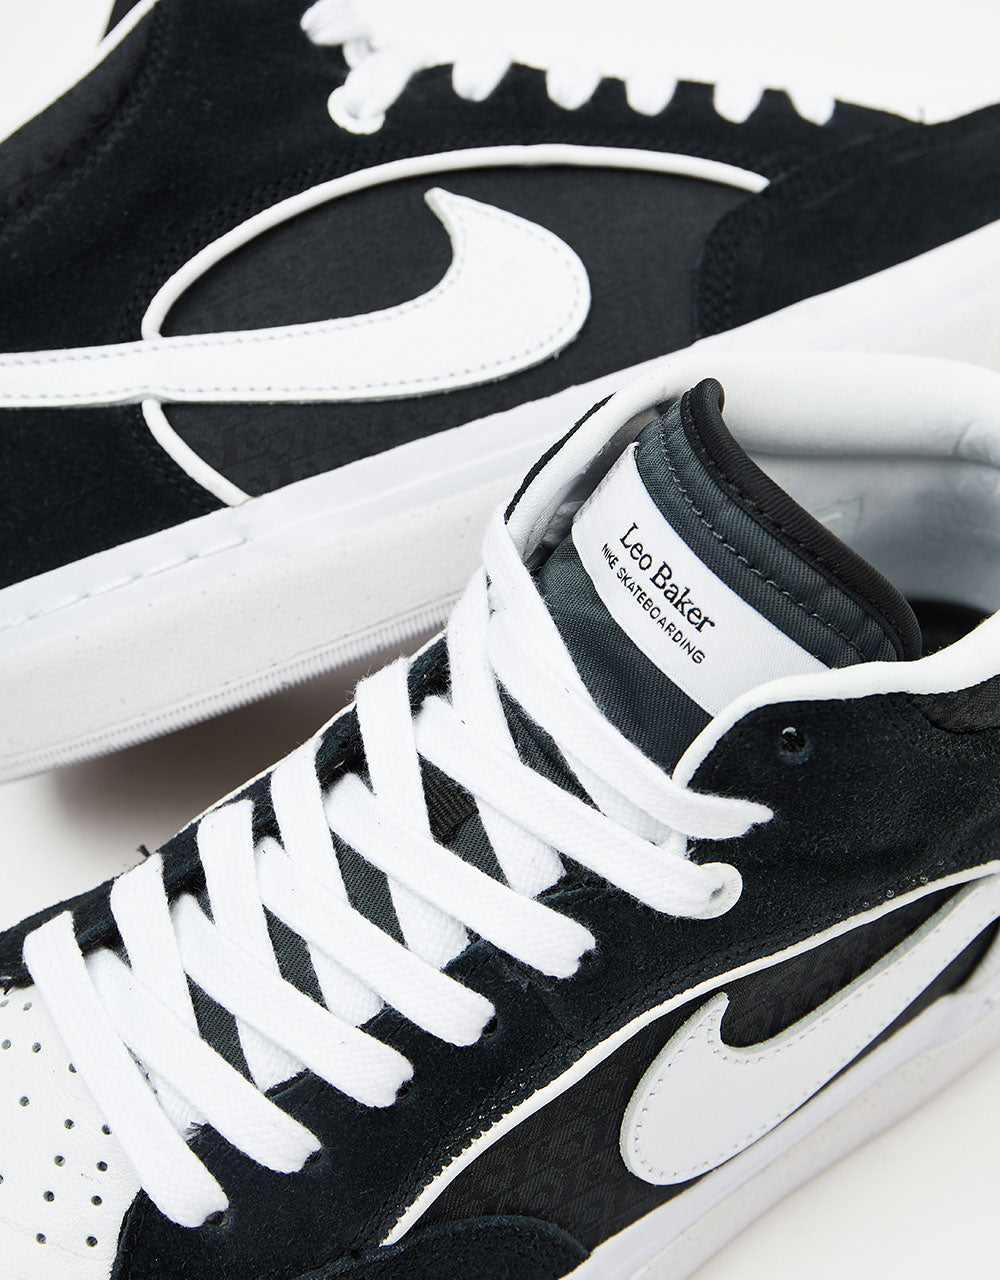 Nike SB React Leo Skate Shoes - Black/White-Black